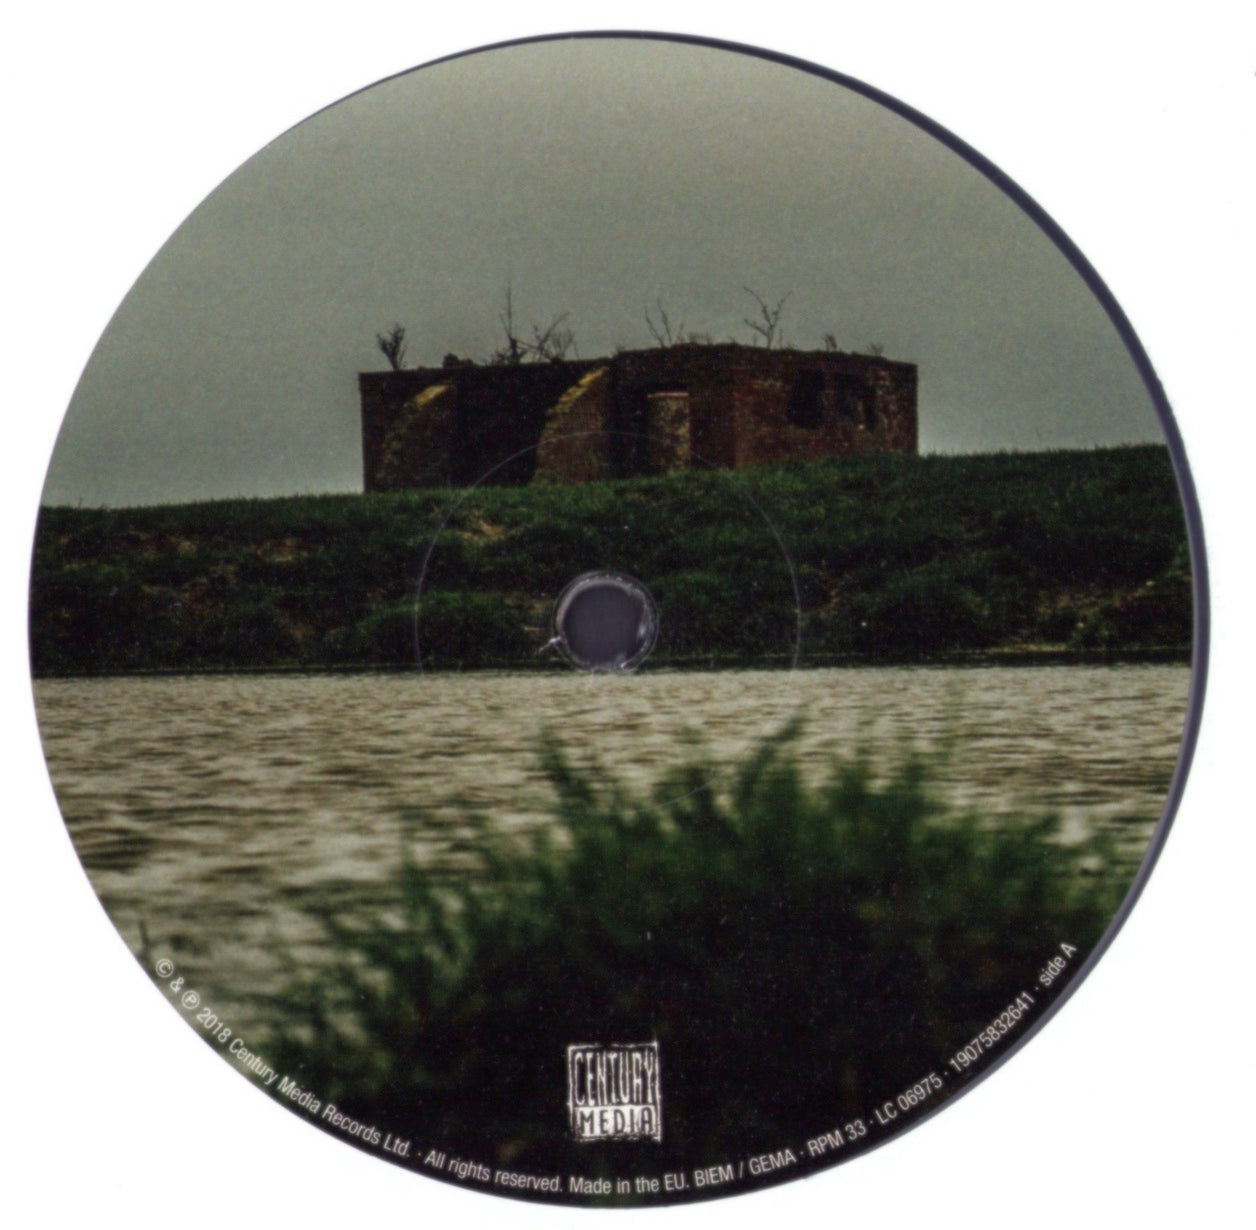 Wiegedood - De Doden Hebben Het Goed III Clear Vinyl LP Limited Edition